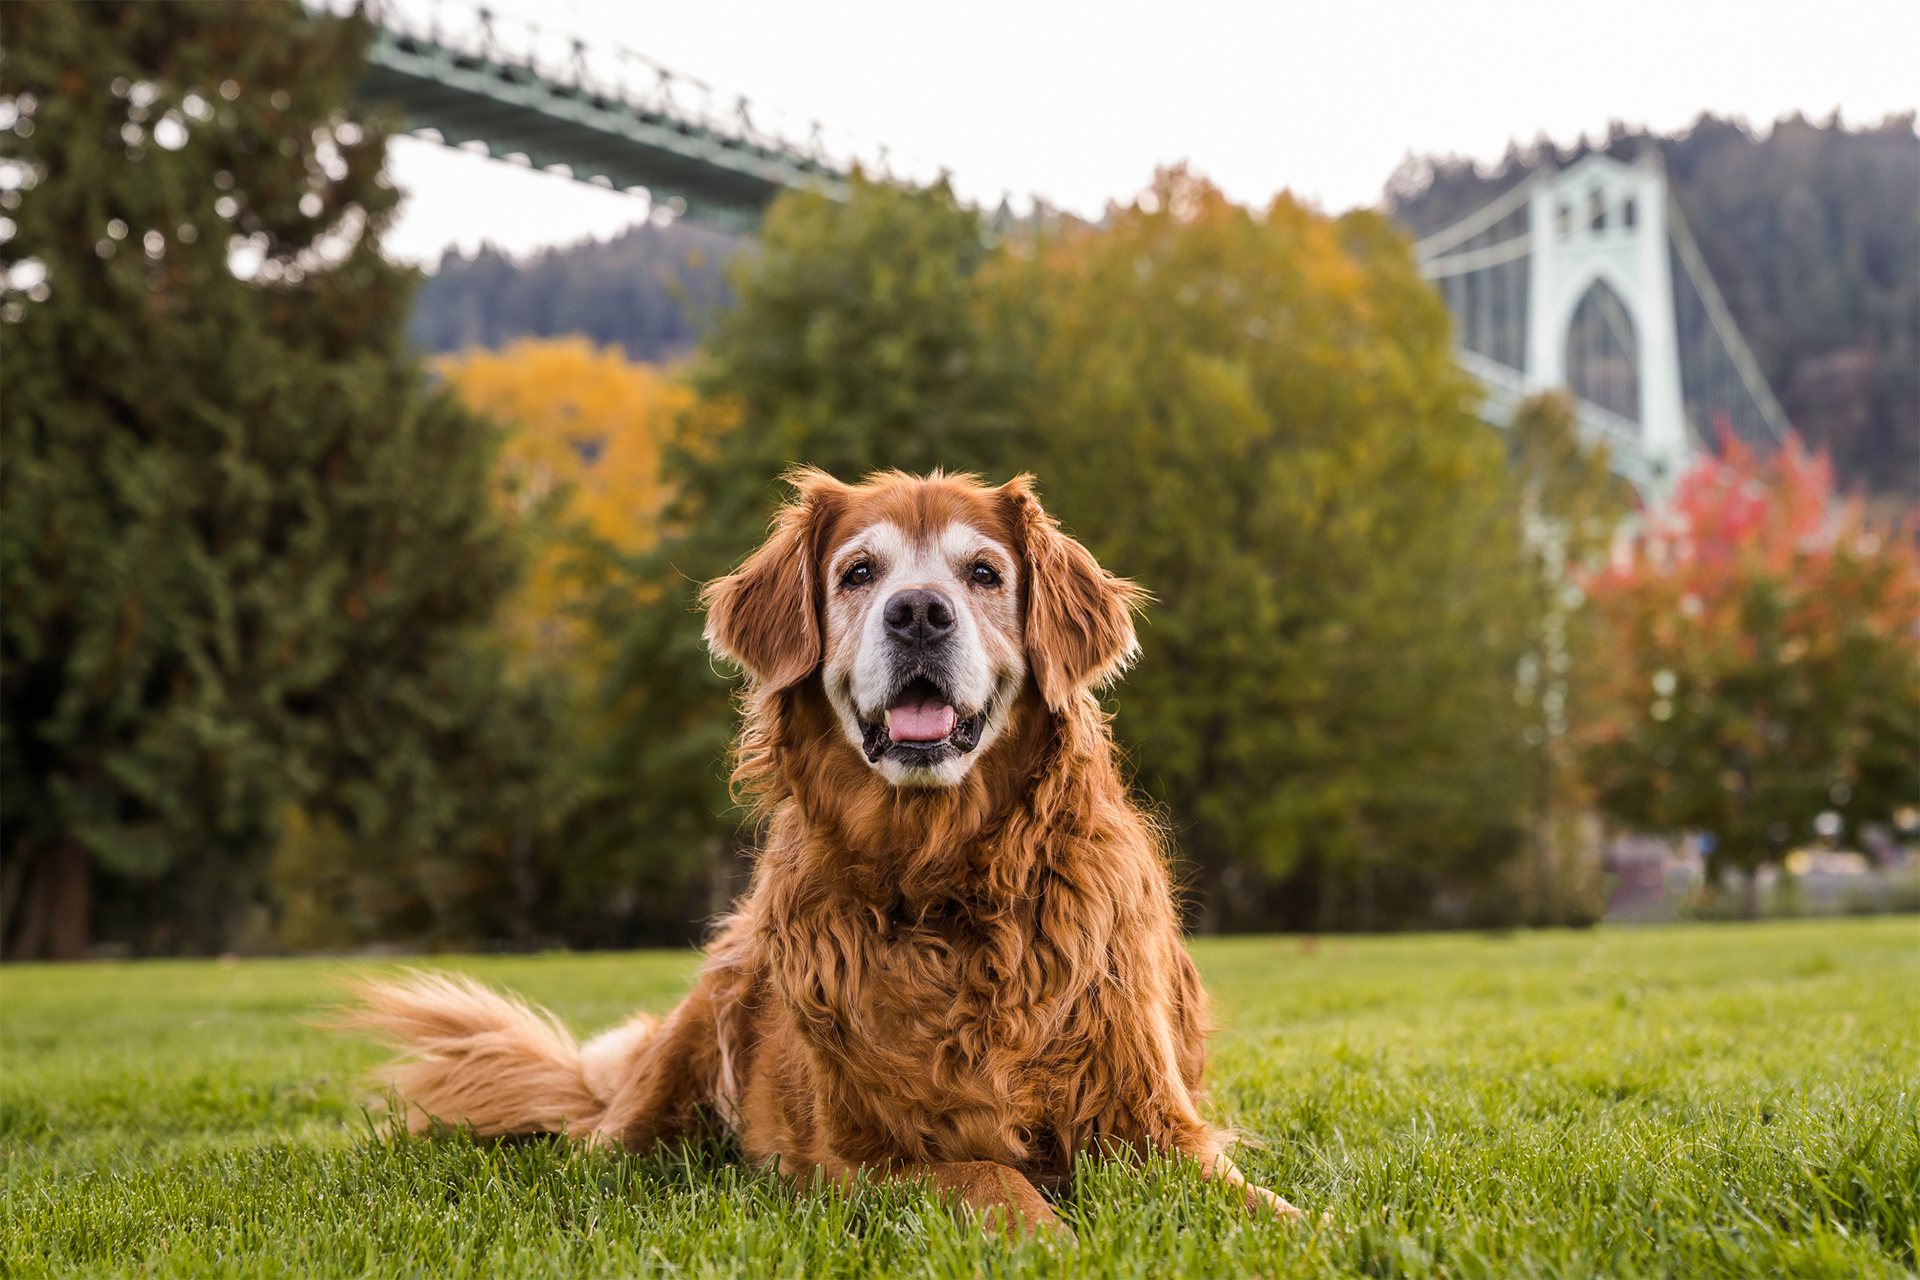 Senior dog smiling in front of St. John's bridge in Portland, OR